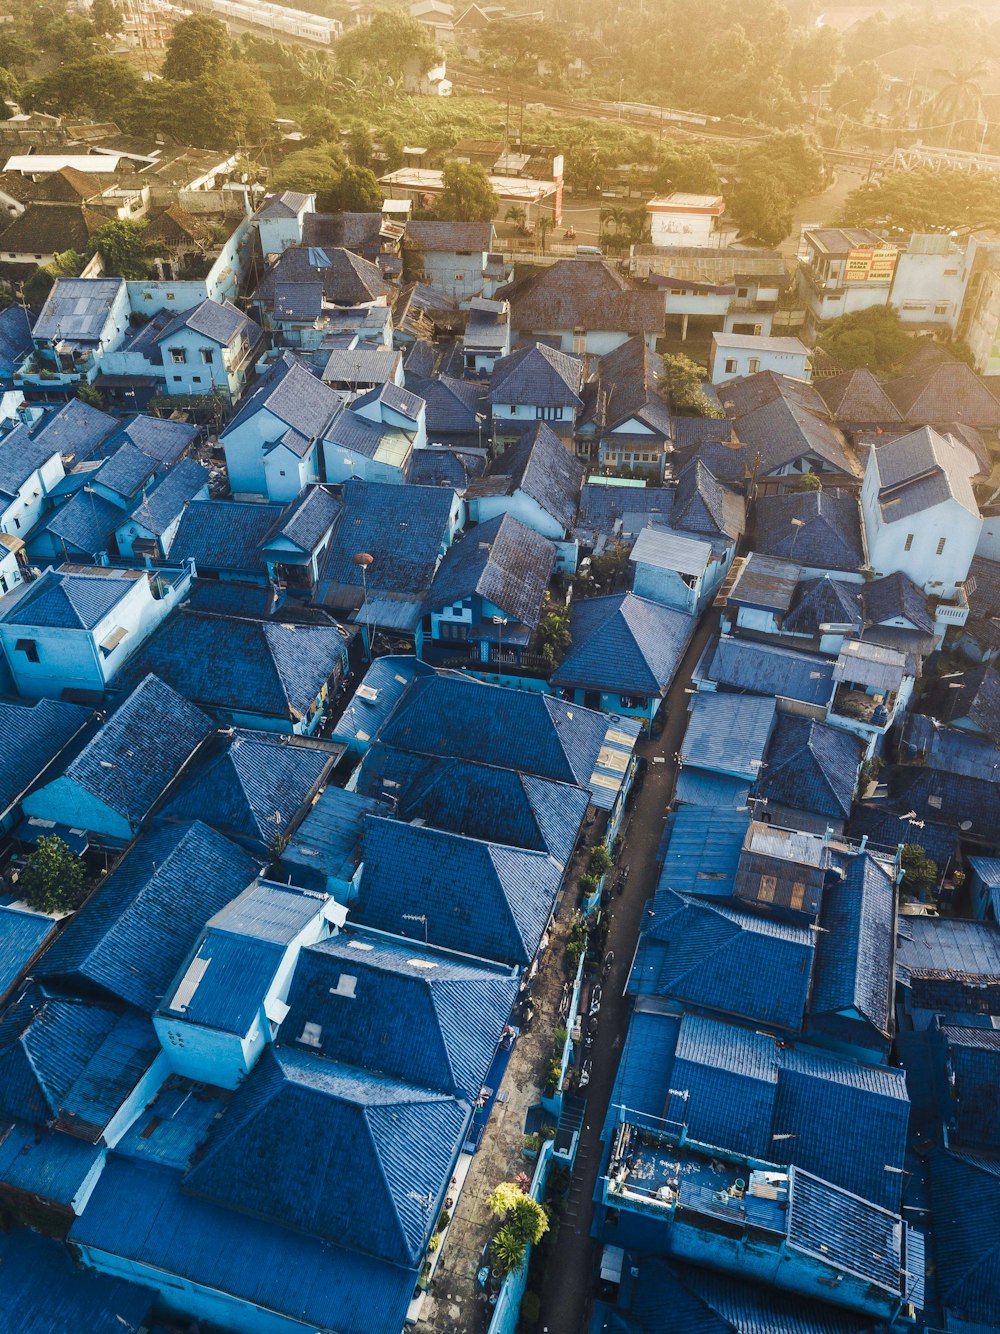 Fotografía aérea de casas de tejados azules durante el día